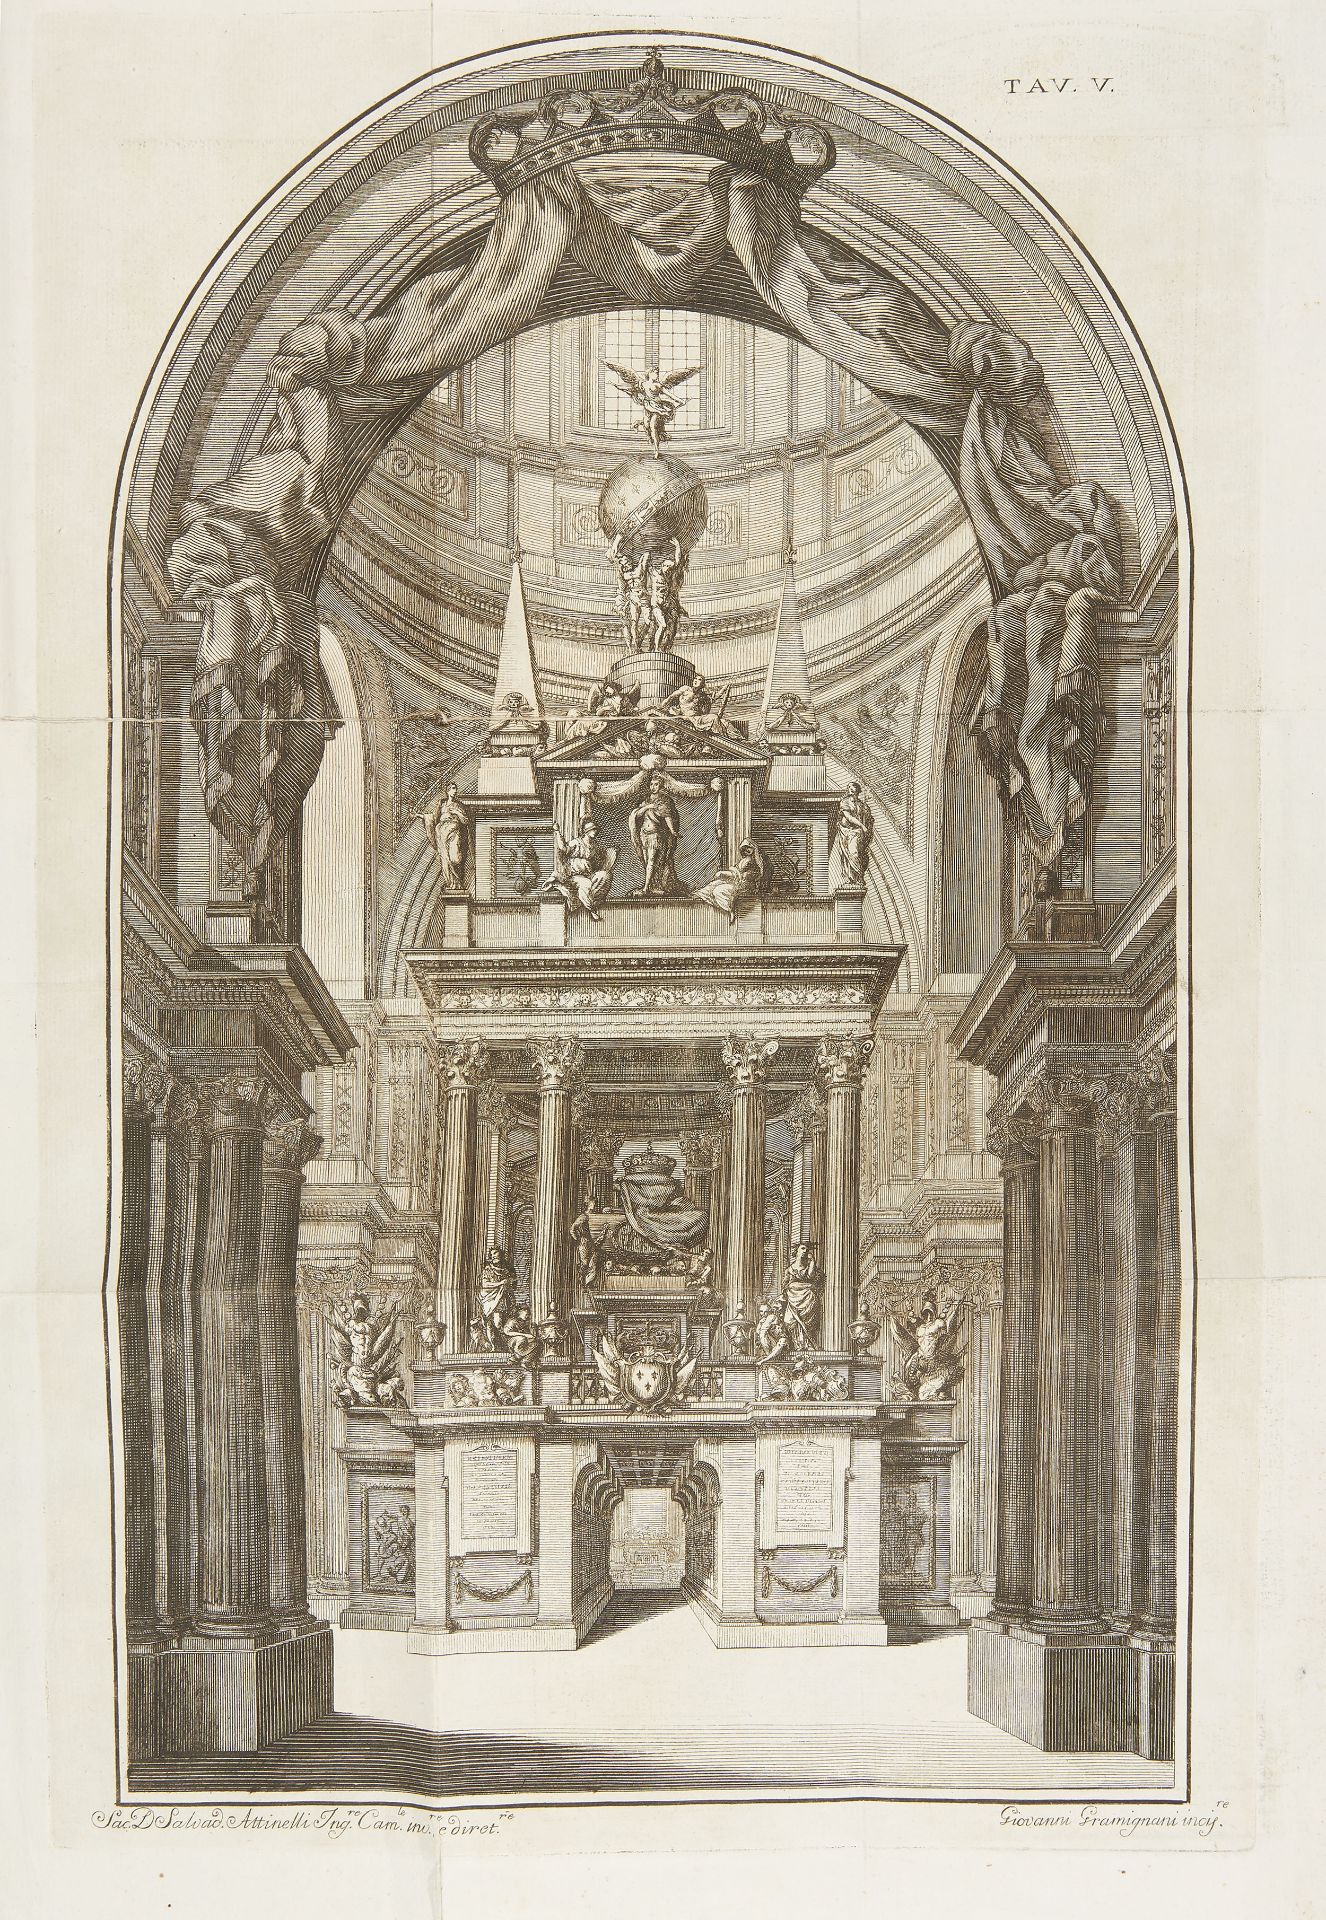 [FUNERALIA]. Funerali per Carlo III Re delle Spagne e per l'infante di Napoli D. Gennaro Borbone.